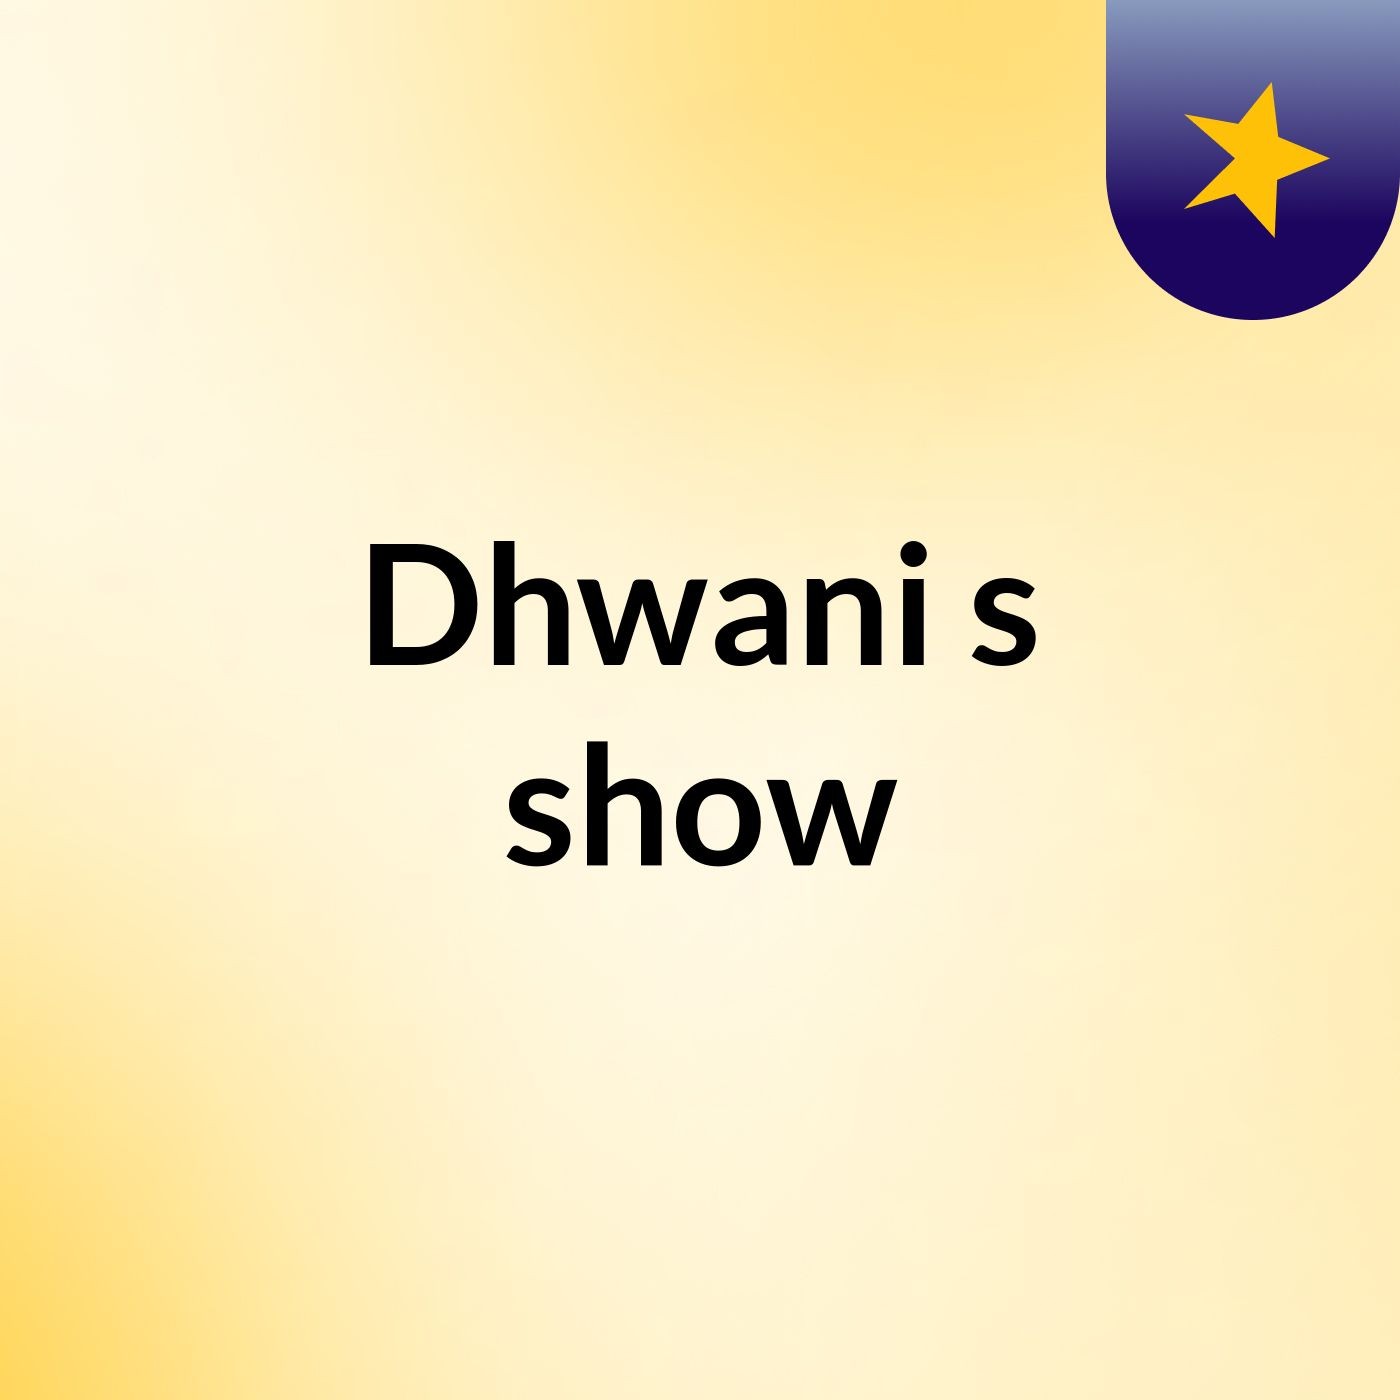 Dhwani's show